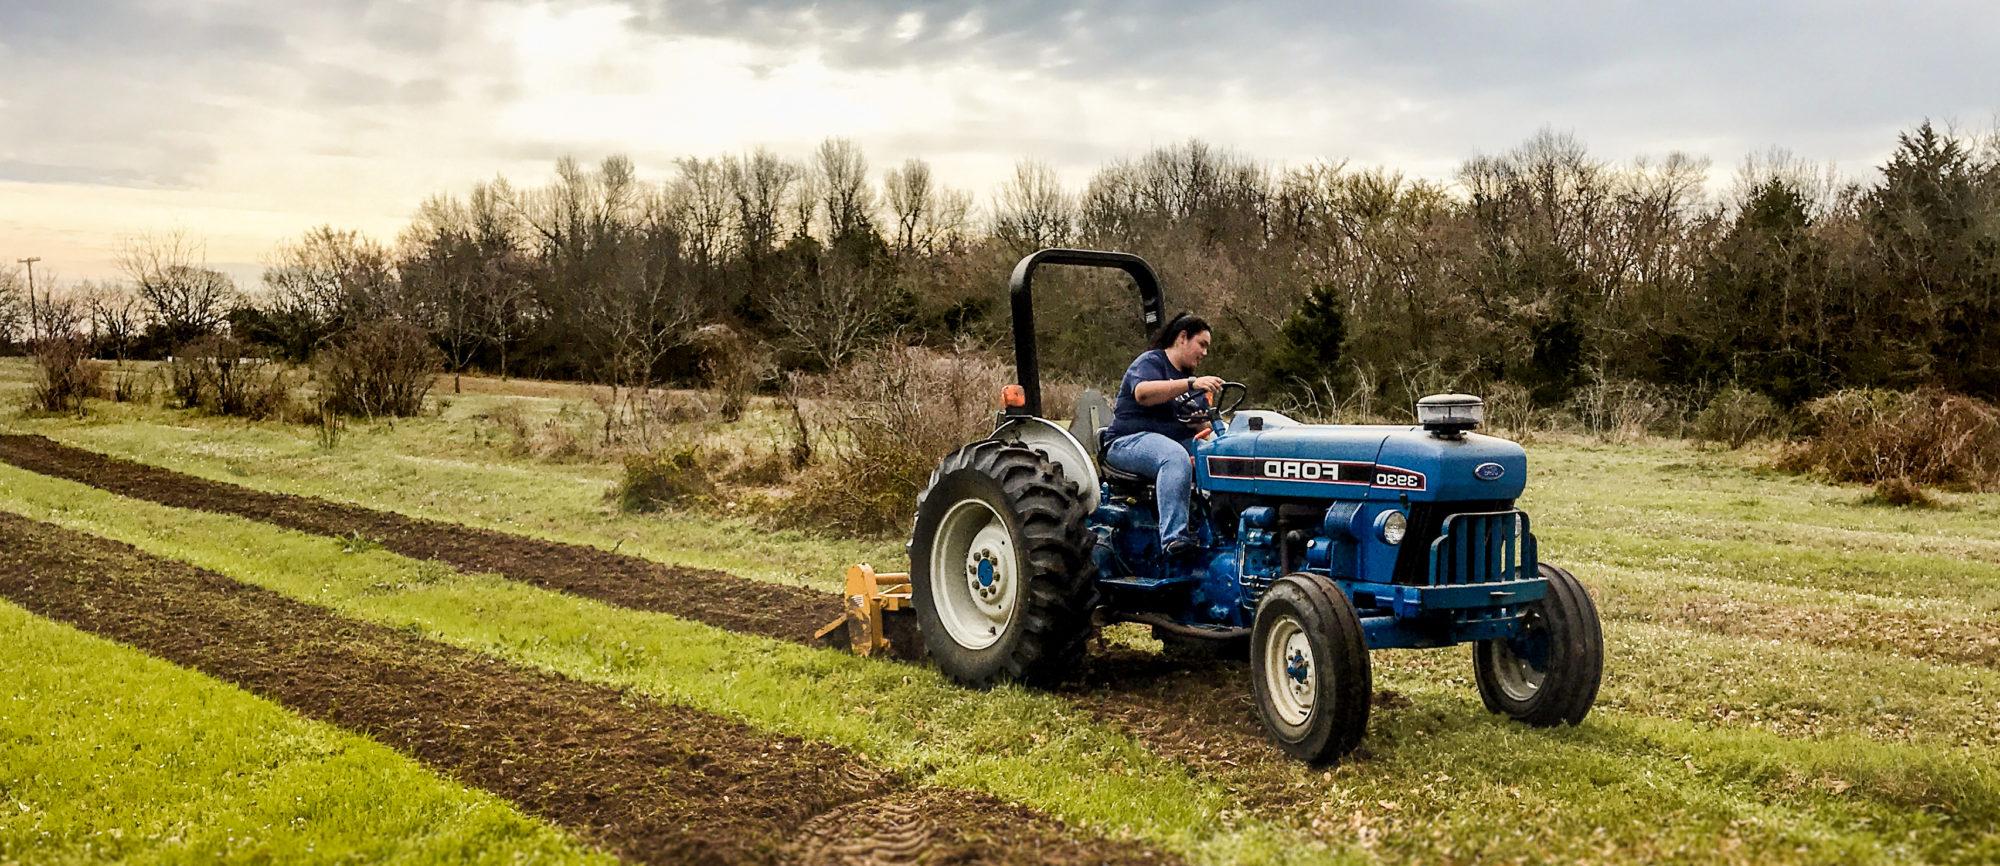 塔穆克大学的学生获得耕地的实践经验.